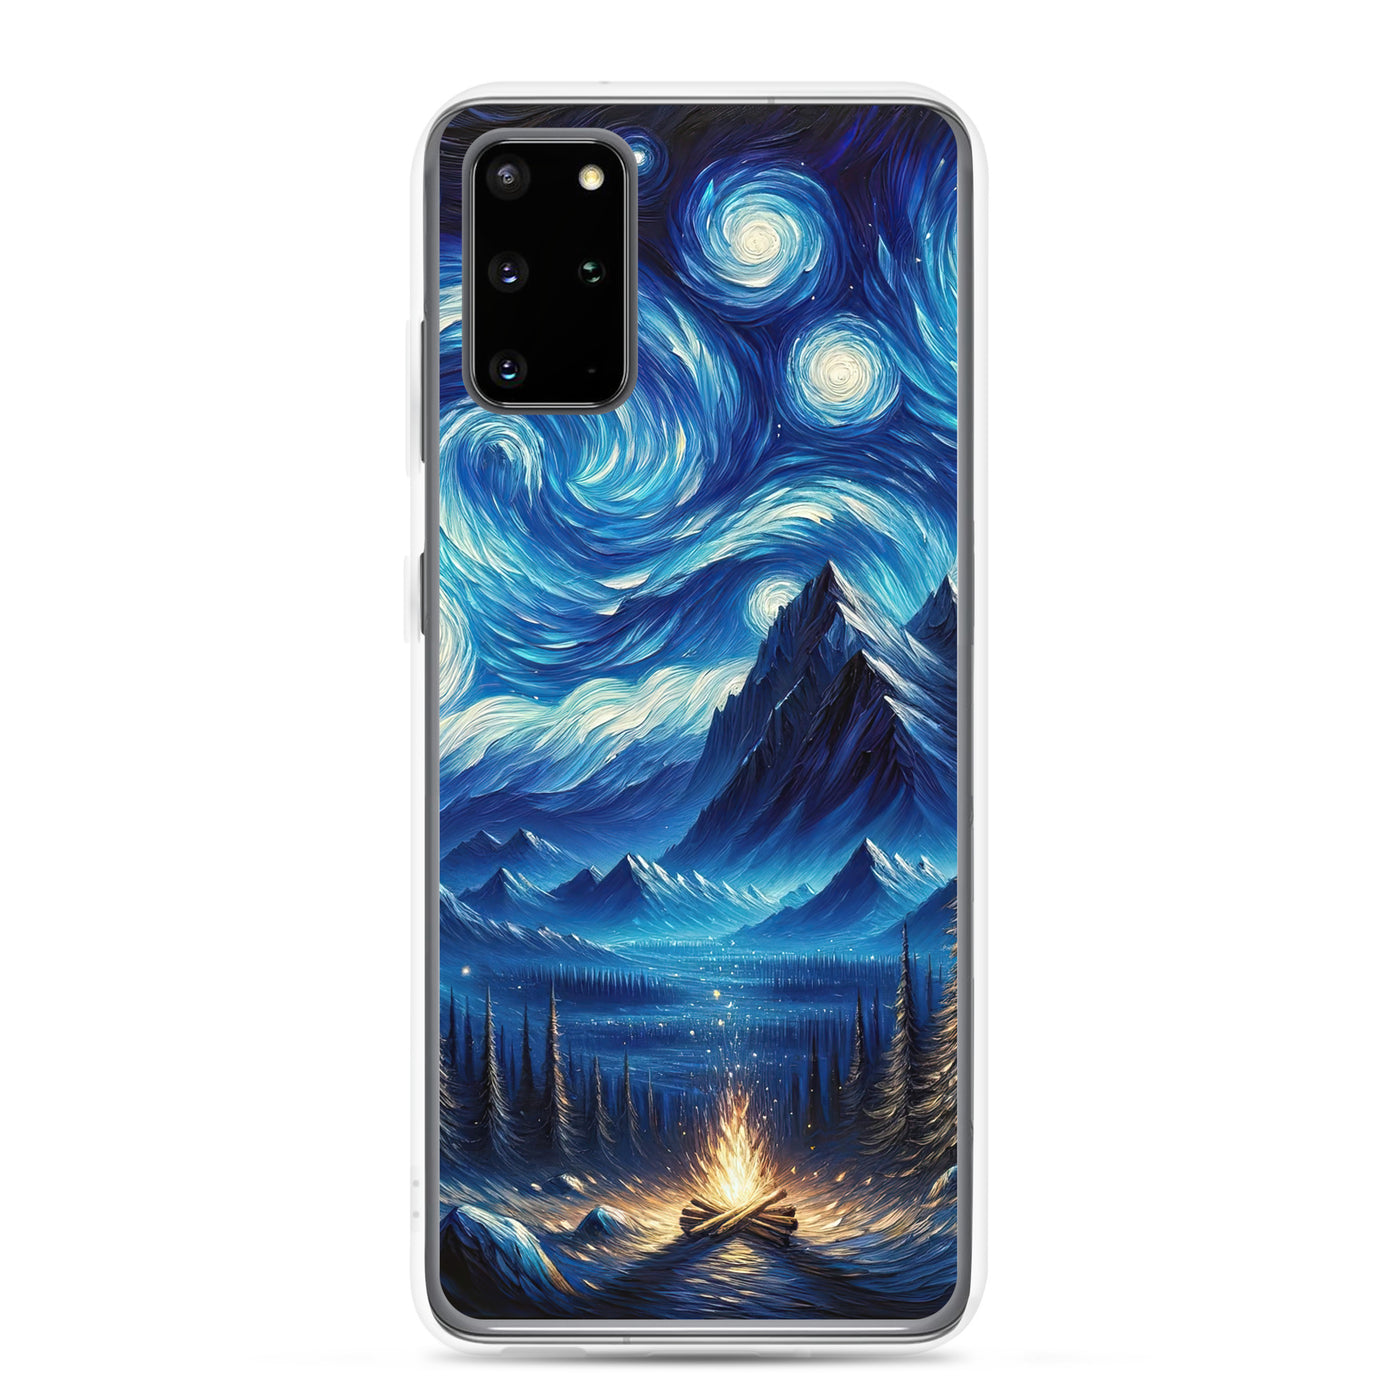 Sternennacht-Stil Ölgemälde der Alpen, himmlische Wirbelmuster - Samsung Schutzhülle (durchsichtig) berge xxx yyy zzz Samsung Galaxy S20 Plus